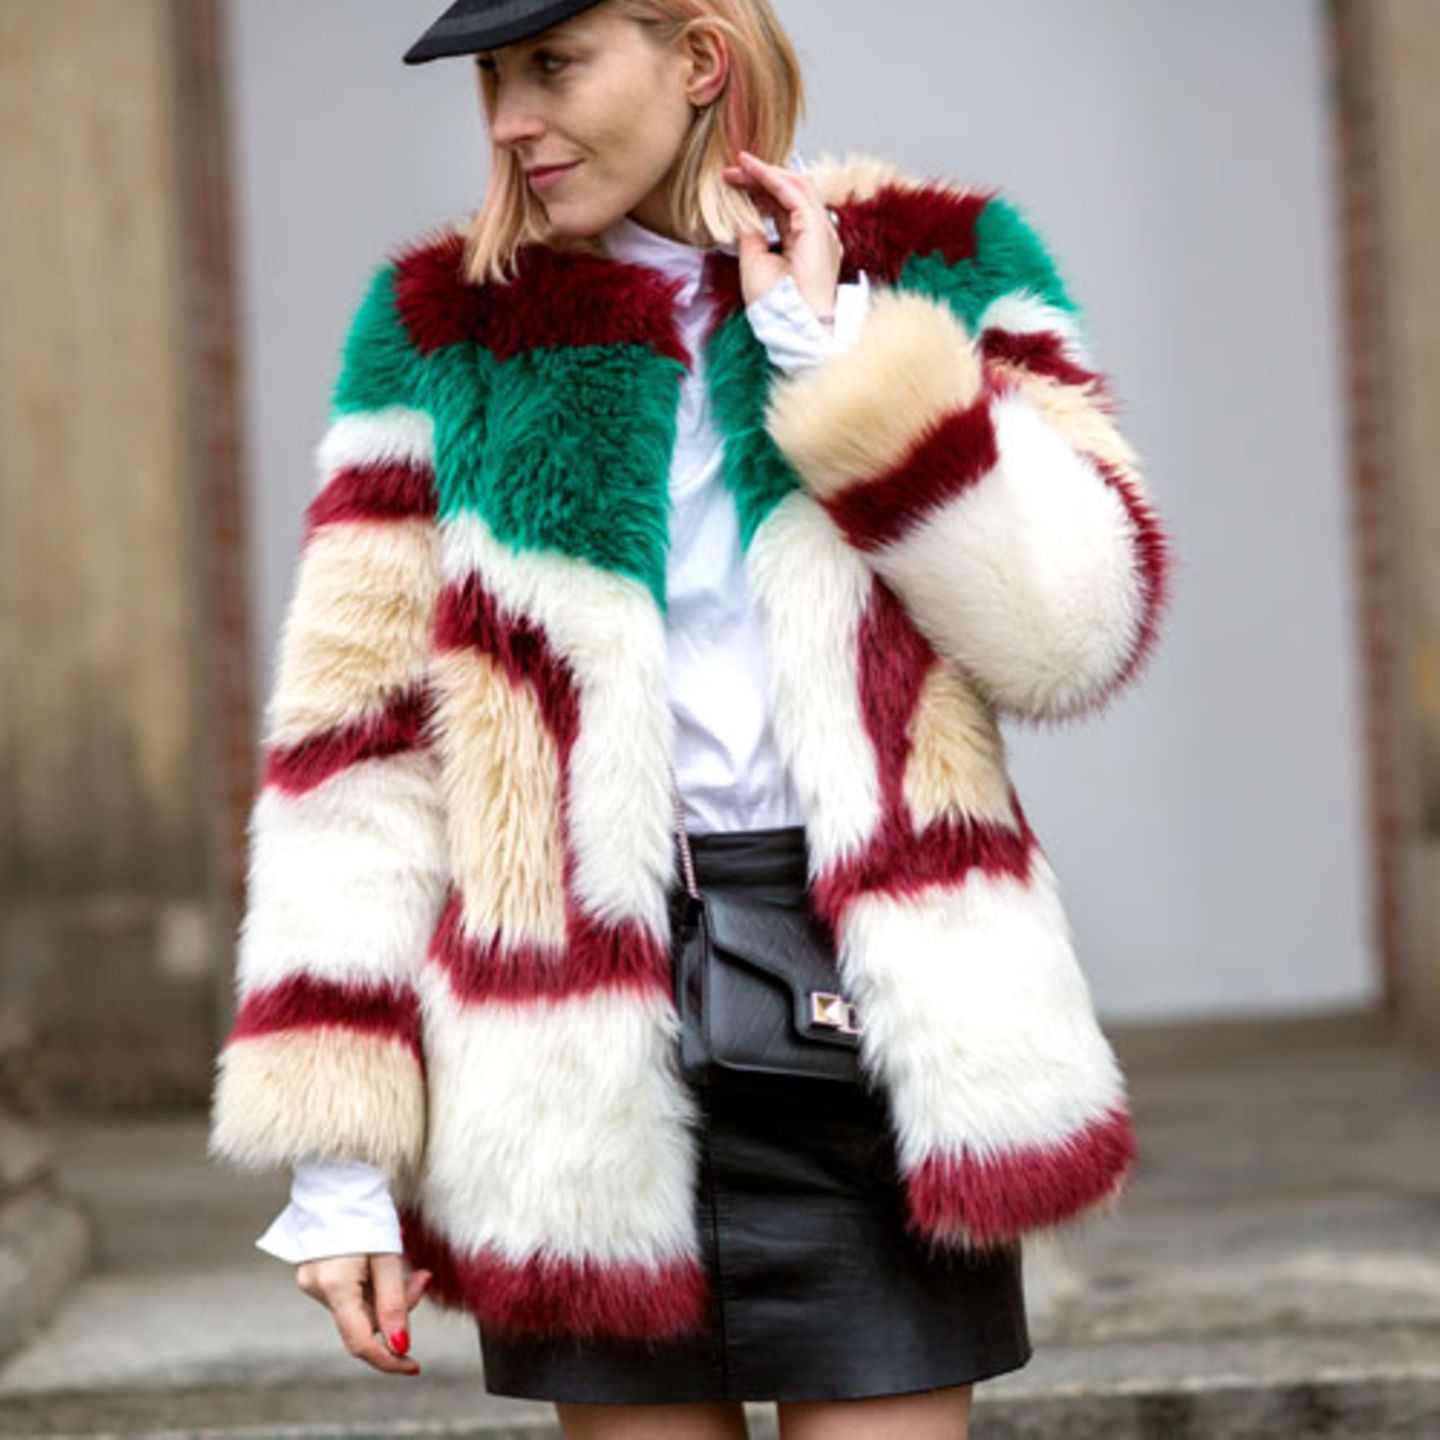 Wir können uns ohne Ende am Faux-Fur-Trend ergötzen - je bunter, je toller! Mode-Redakteurin und Bloggerin Claudia Zakrocki macht uns mit ihrem Mantel und Leder-Mini glücklich.